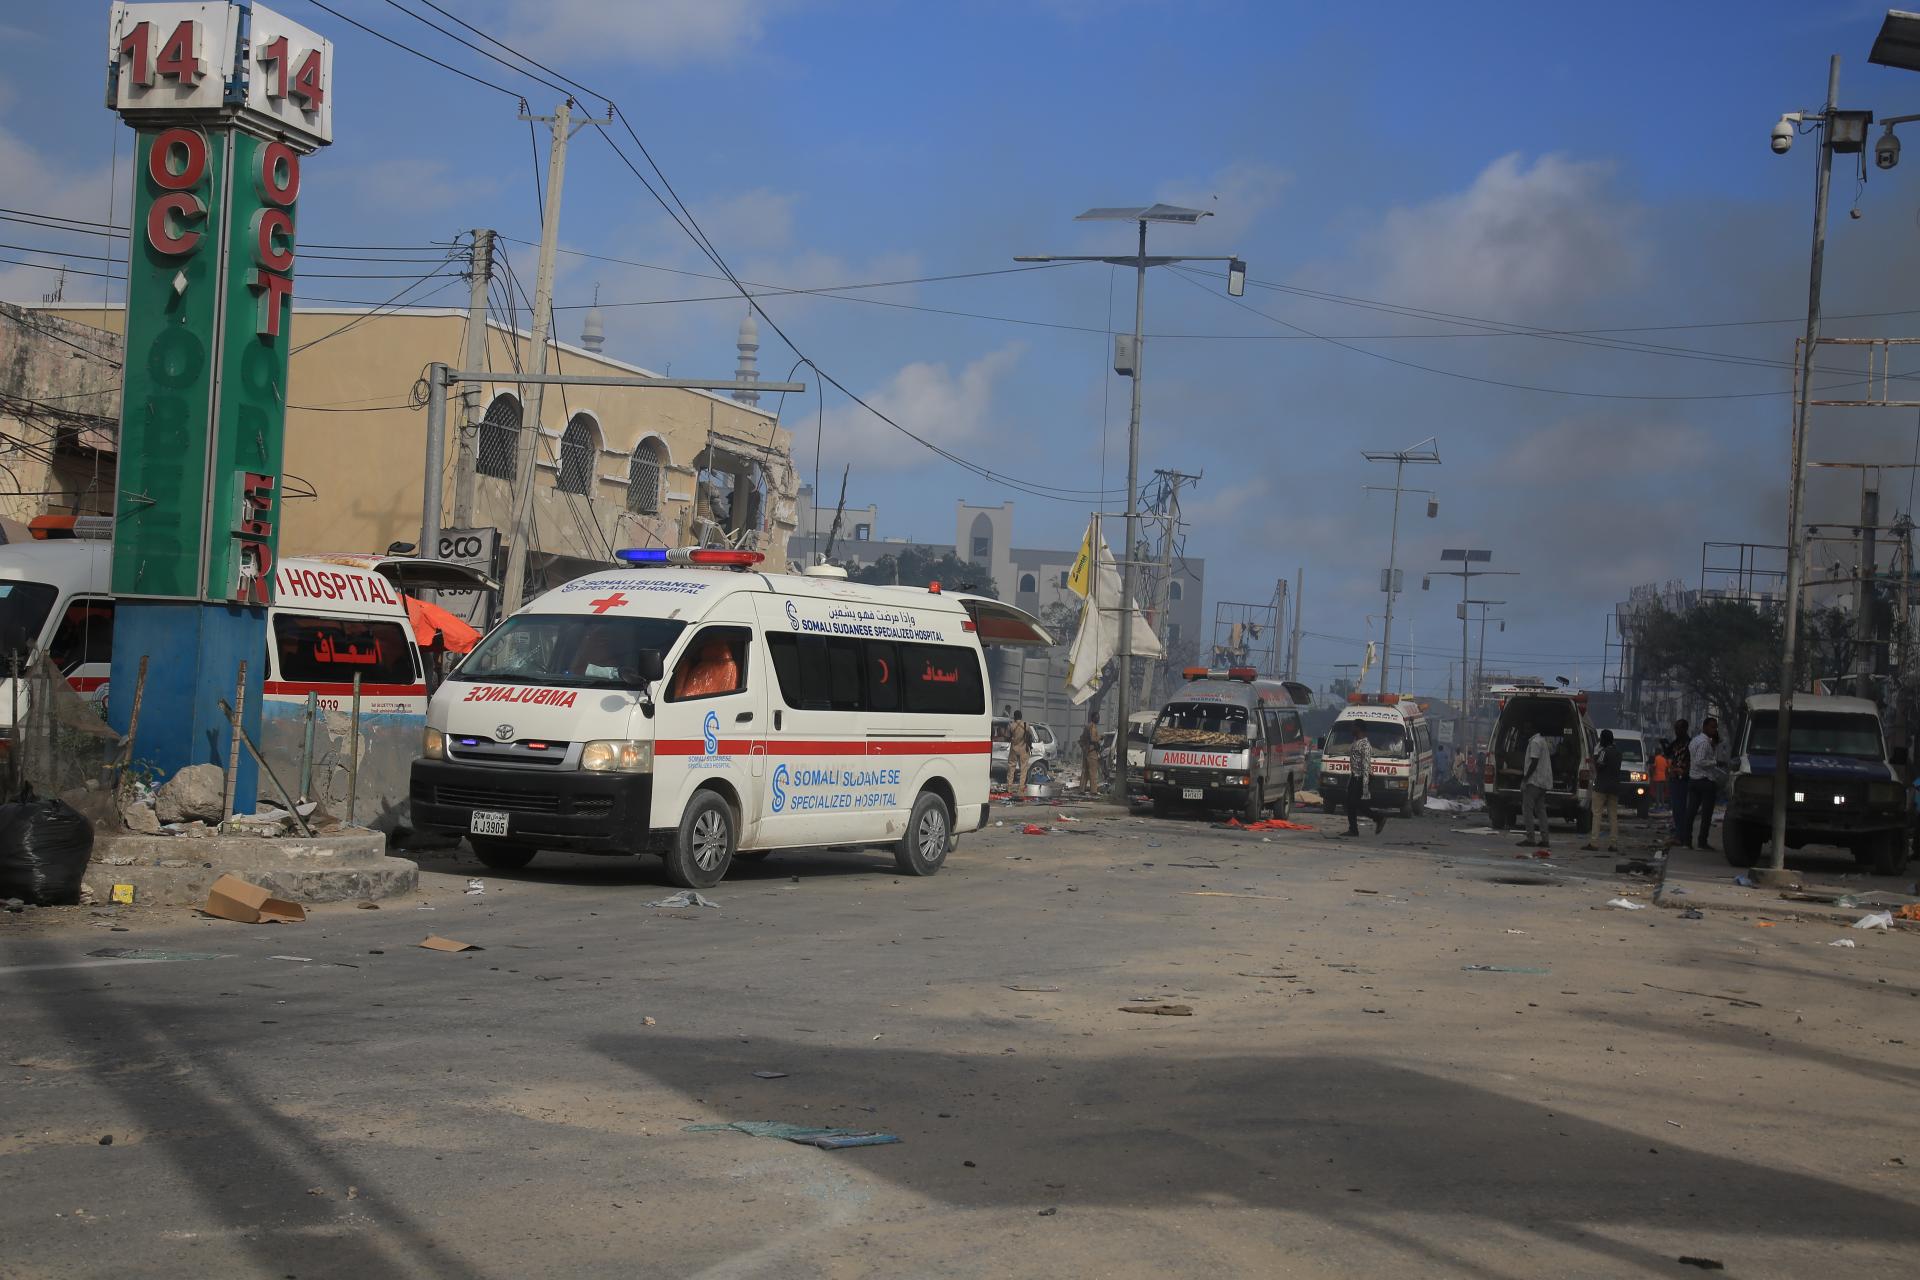 有消息称索马里安全部部长在酒店袭击中受伤